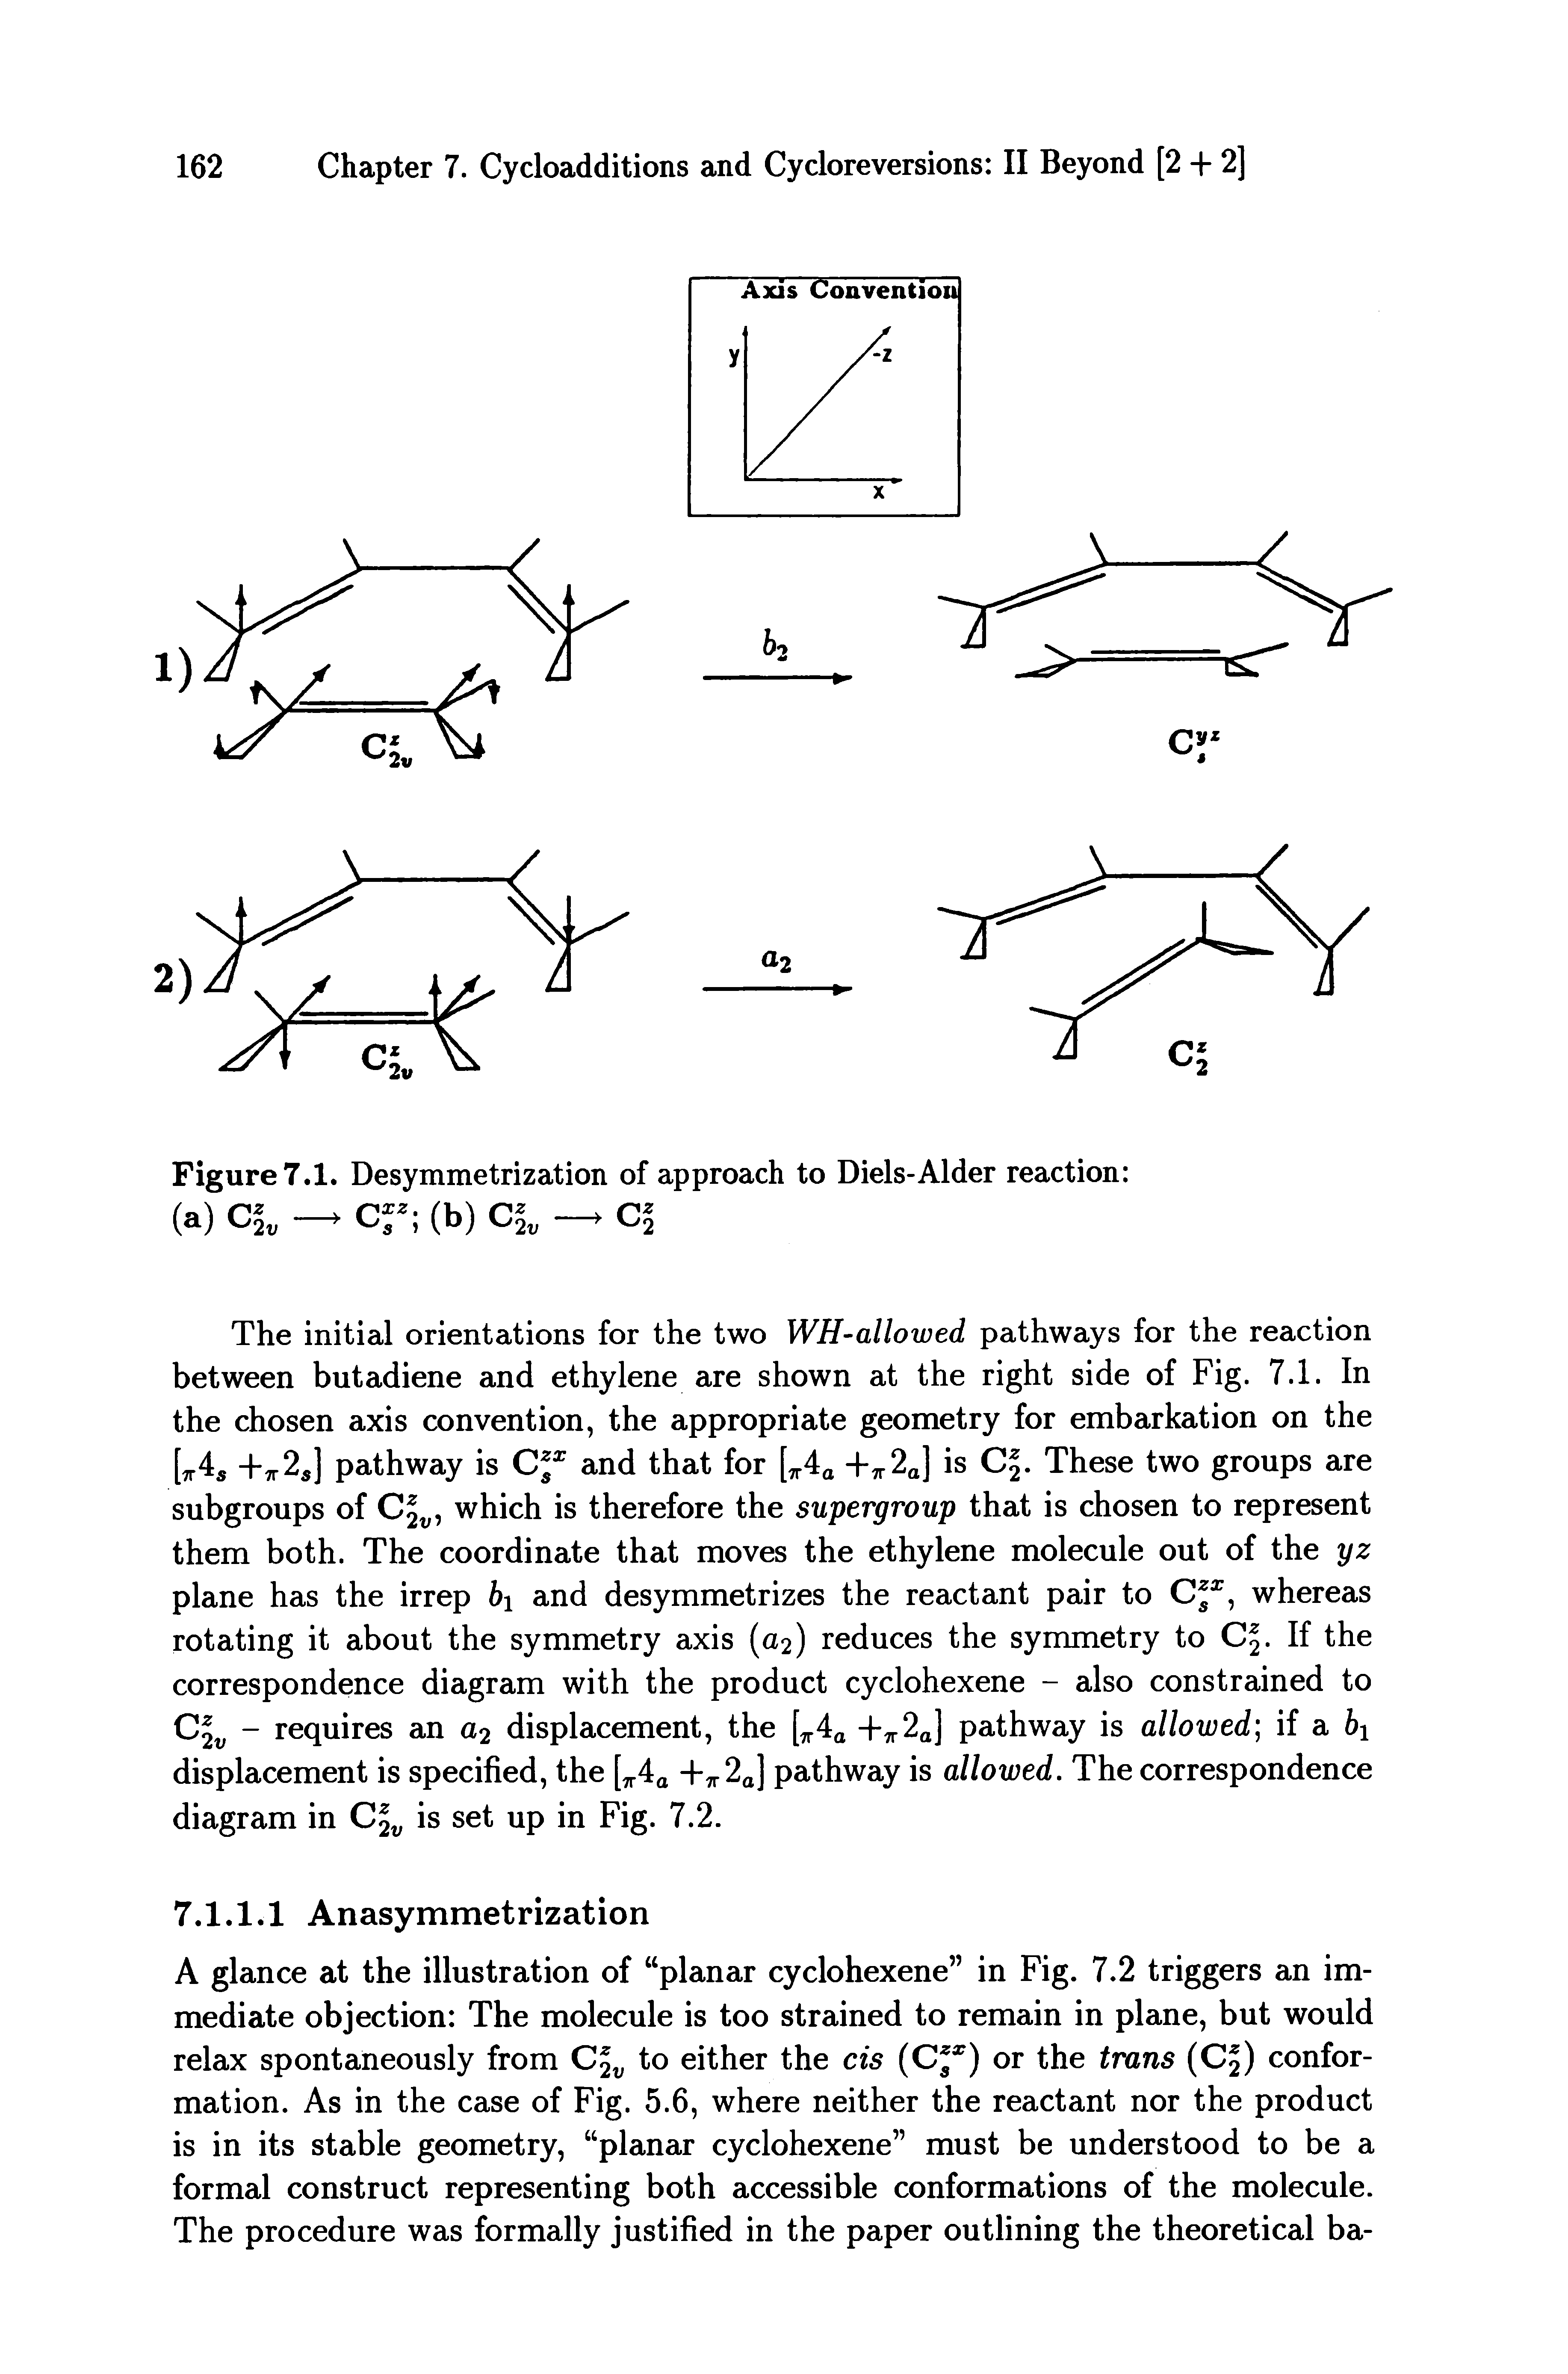 Figure 7.1. Desymmetrization of approach to Diels-Alder reaction ...